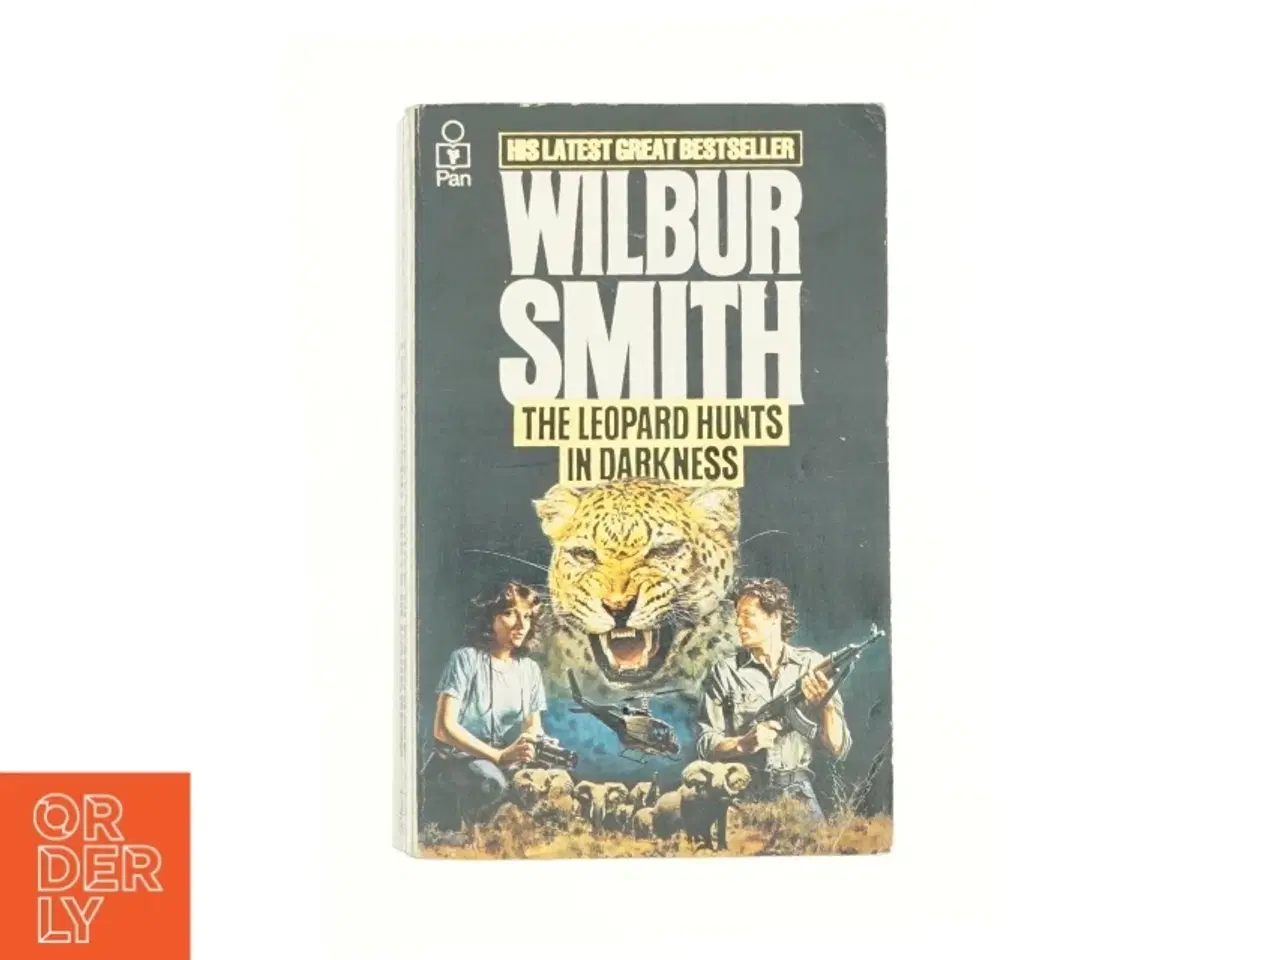 Billede 1 - The Leopard Hunts in Darkness by Wilbur, Smith, Wilbur a. Smith af Wilbur Smith (Bog)